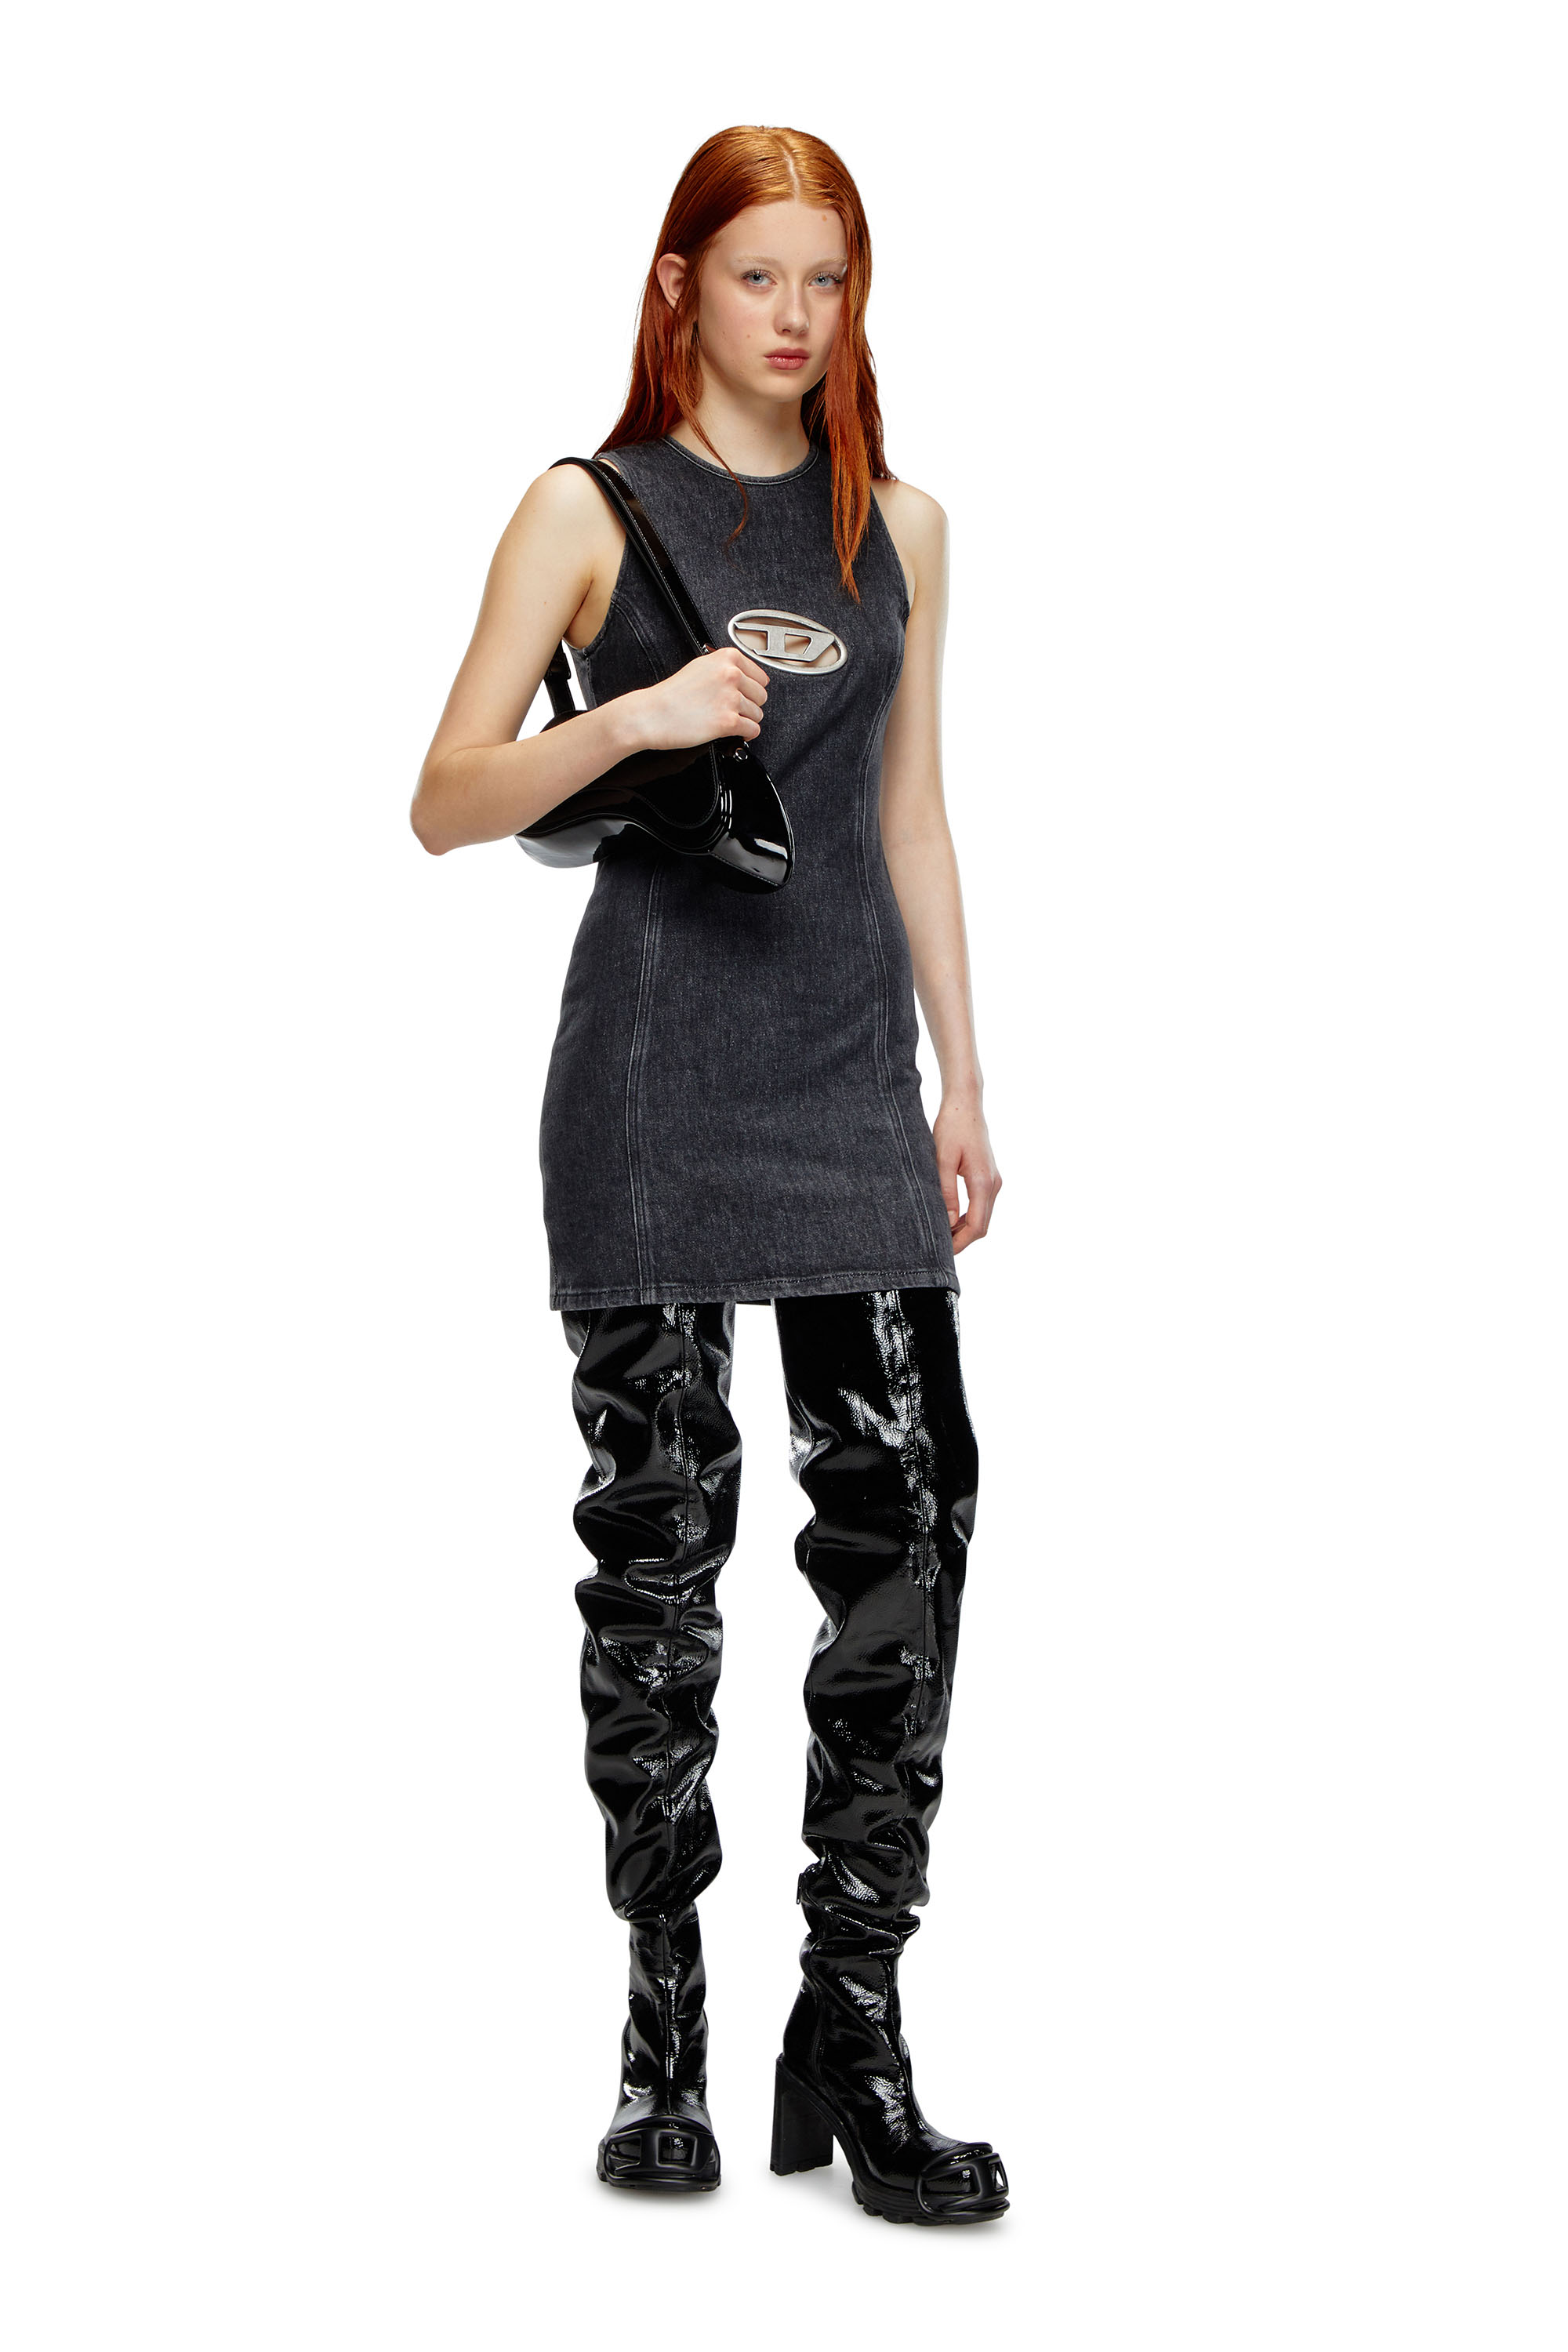 Diesel - DE-FERRIZ-FSD, Woman Denim mini dress with Oval D plaque in Black - Image 2